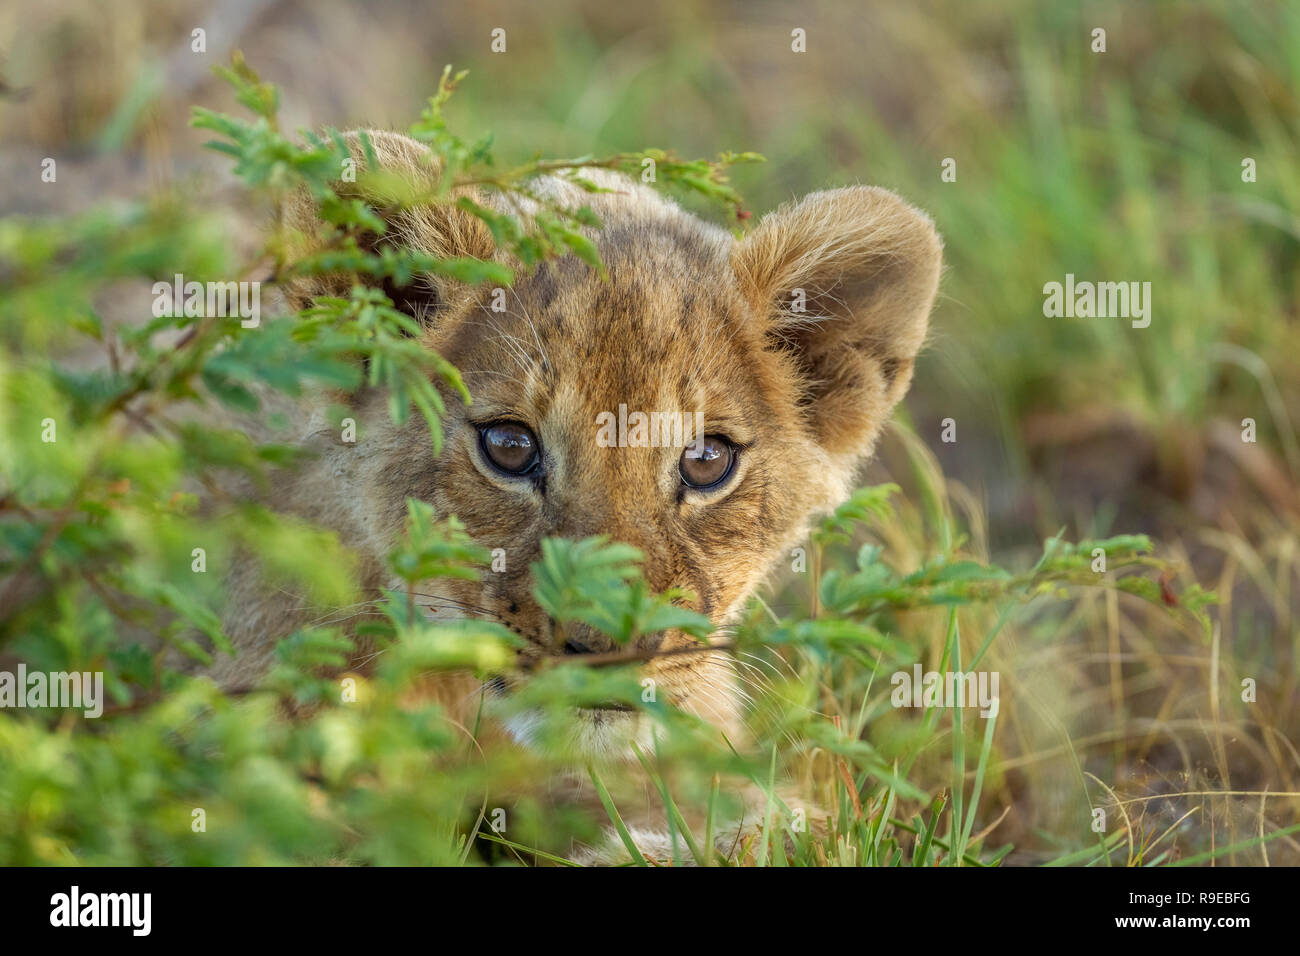 lindo cachorro de león de bebé escondido detrás de un arbusto y mirando curiosamente en la cámara Foto de stock